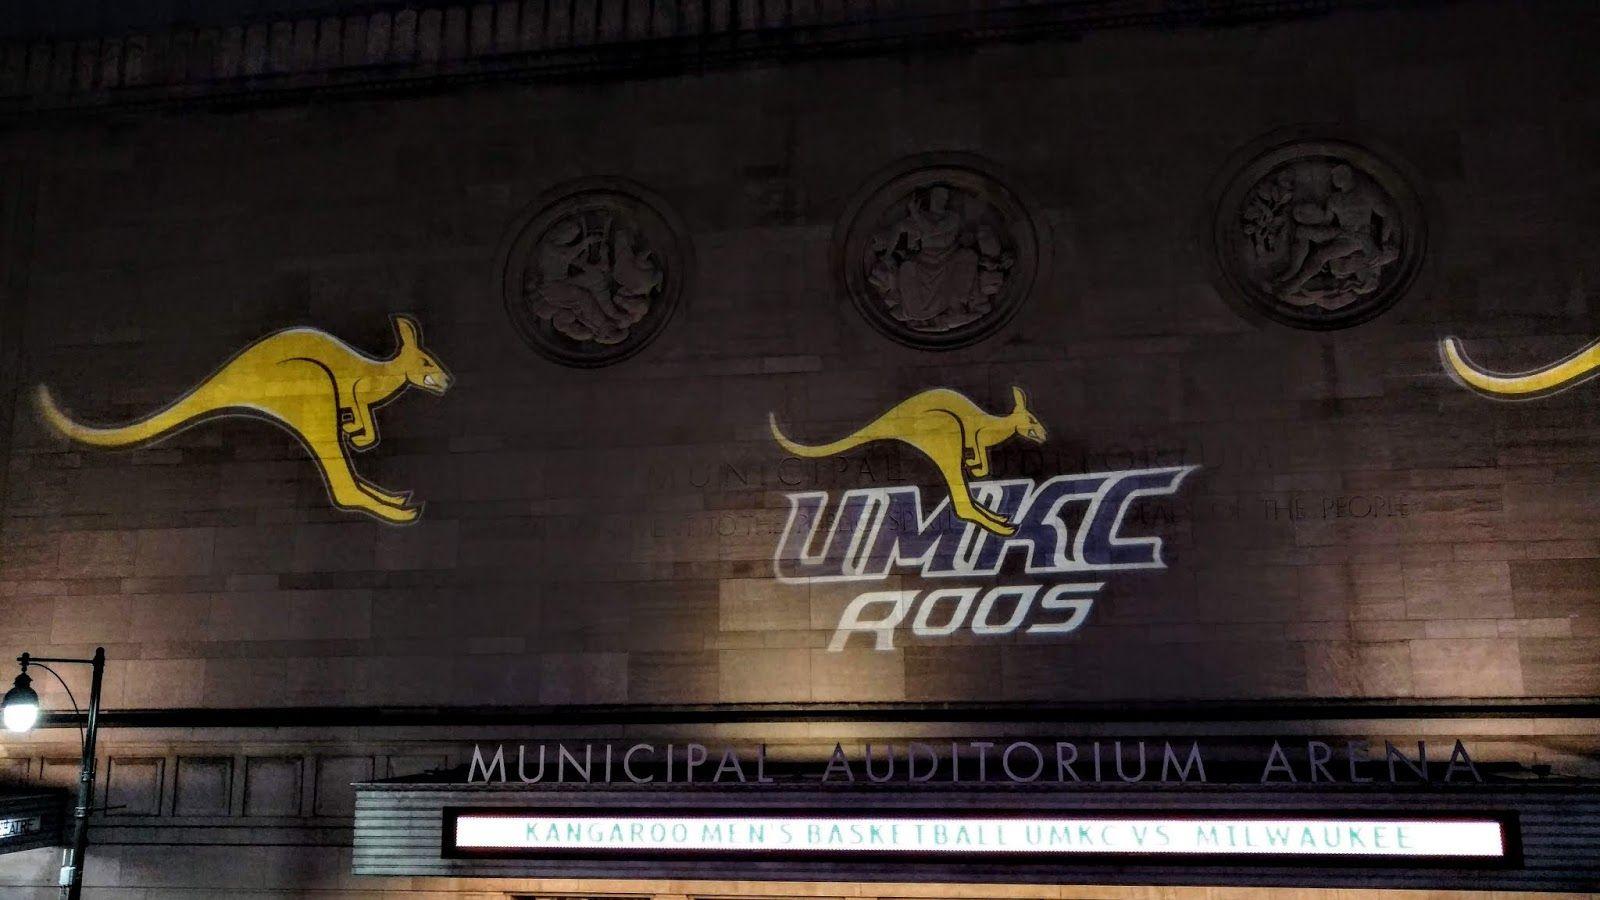 Kangaroos Basketball Logo - Sports Road Trips: UW-Milwaukee Panthers 69 at UMKC Kangaroos 66 ...